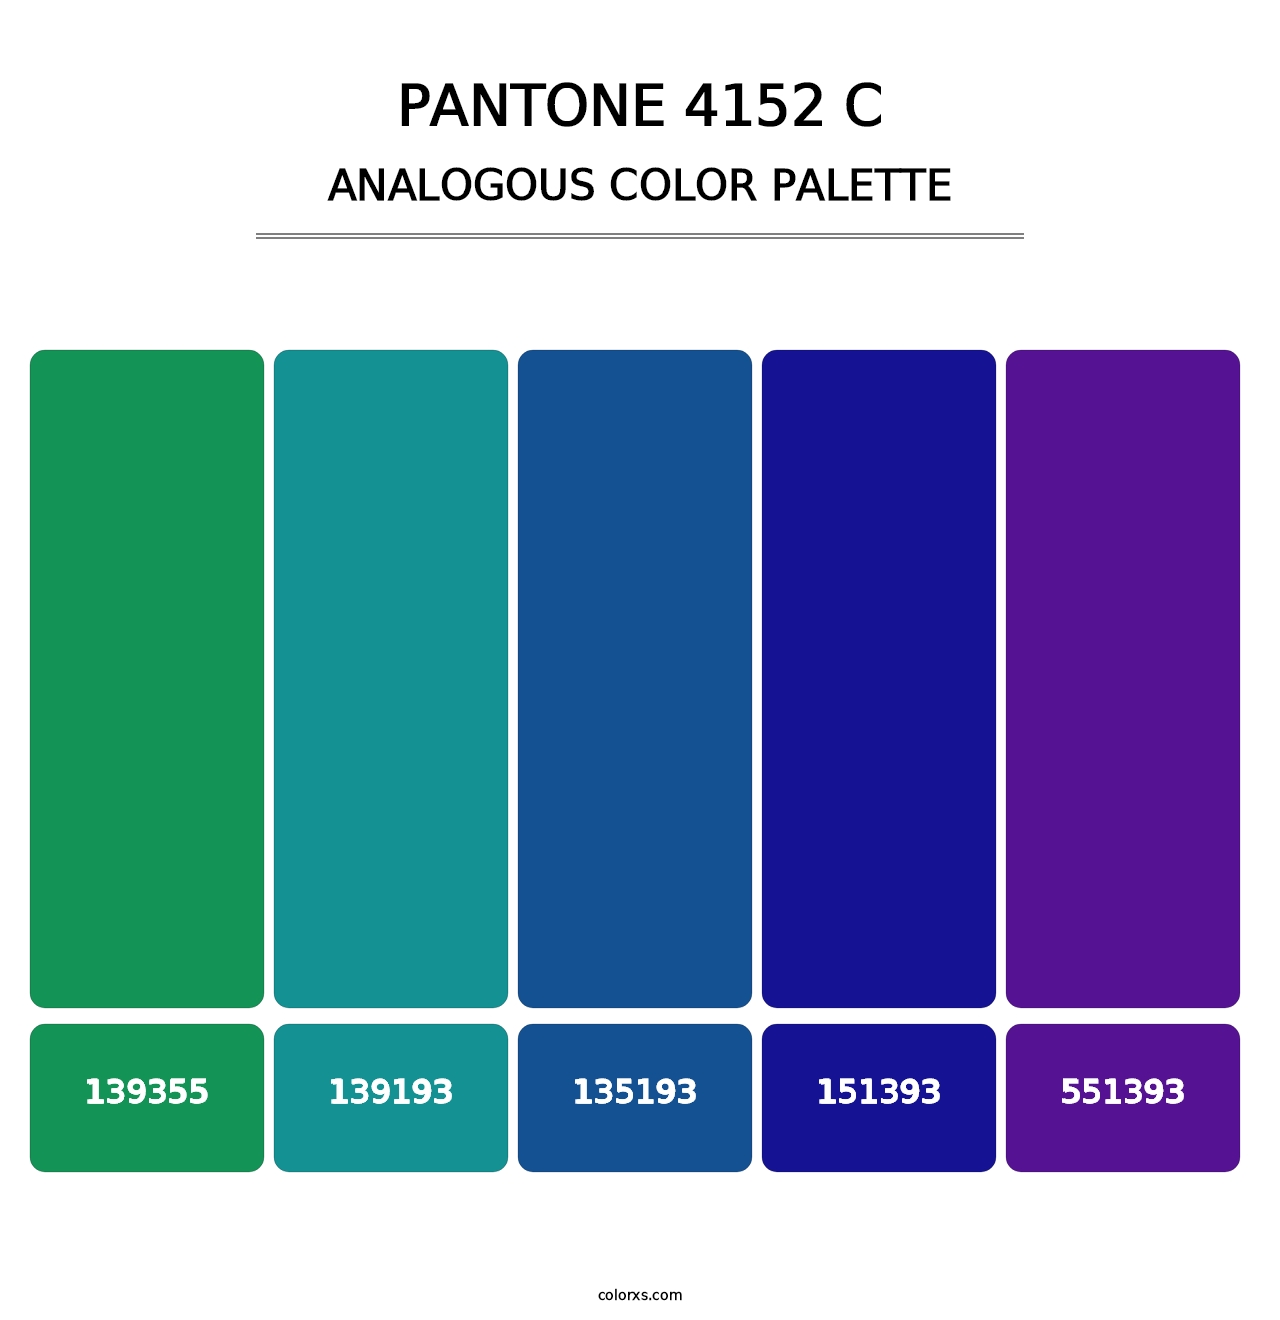 PANTONE 4152 C - Analogous Color Palette